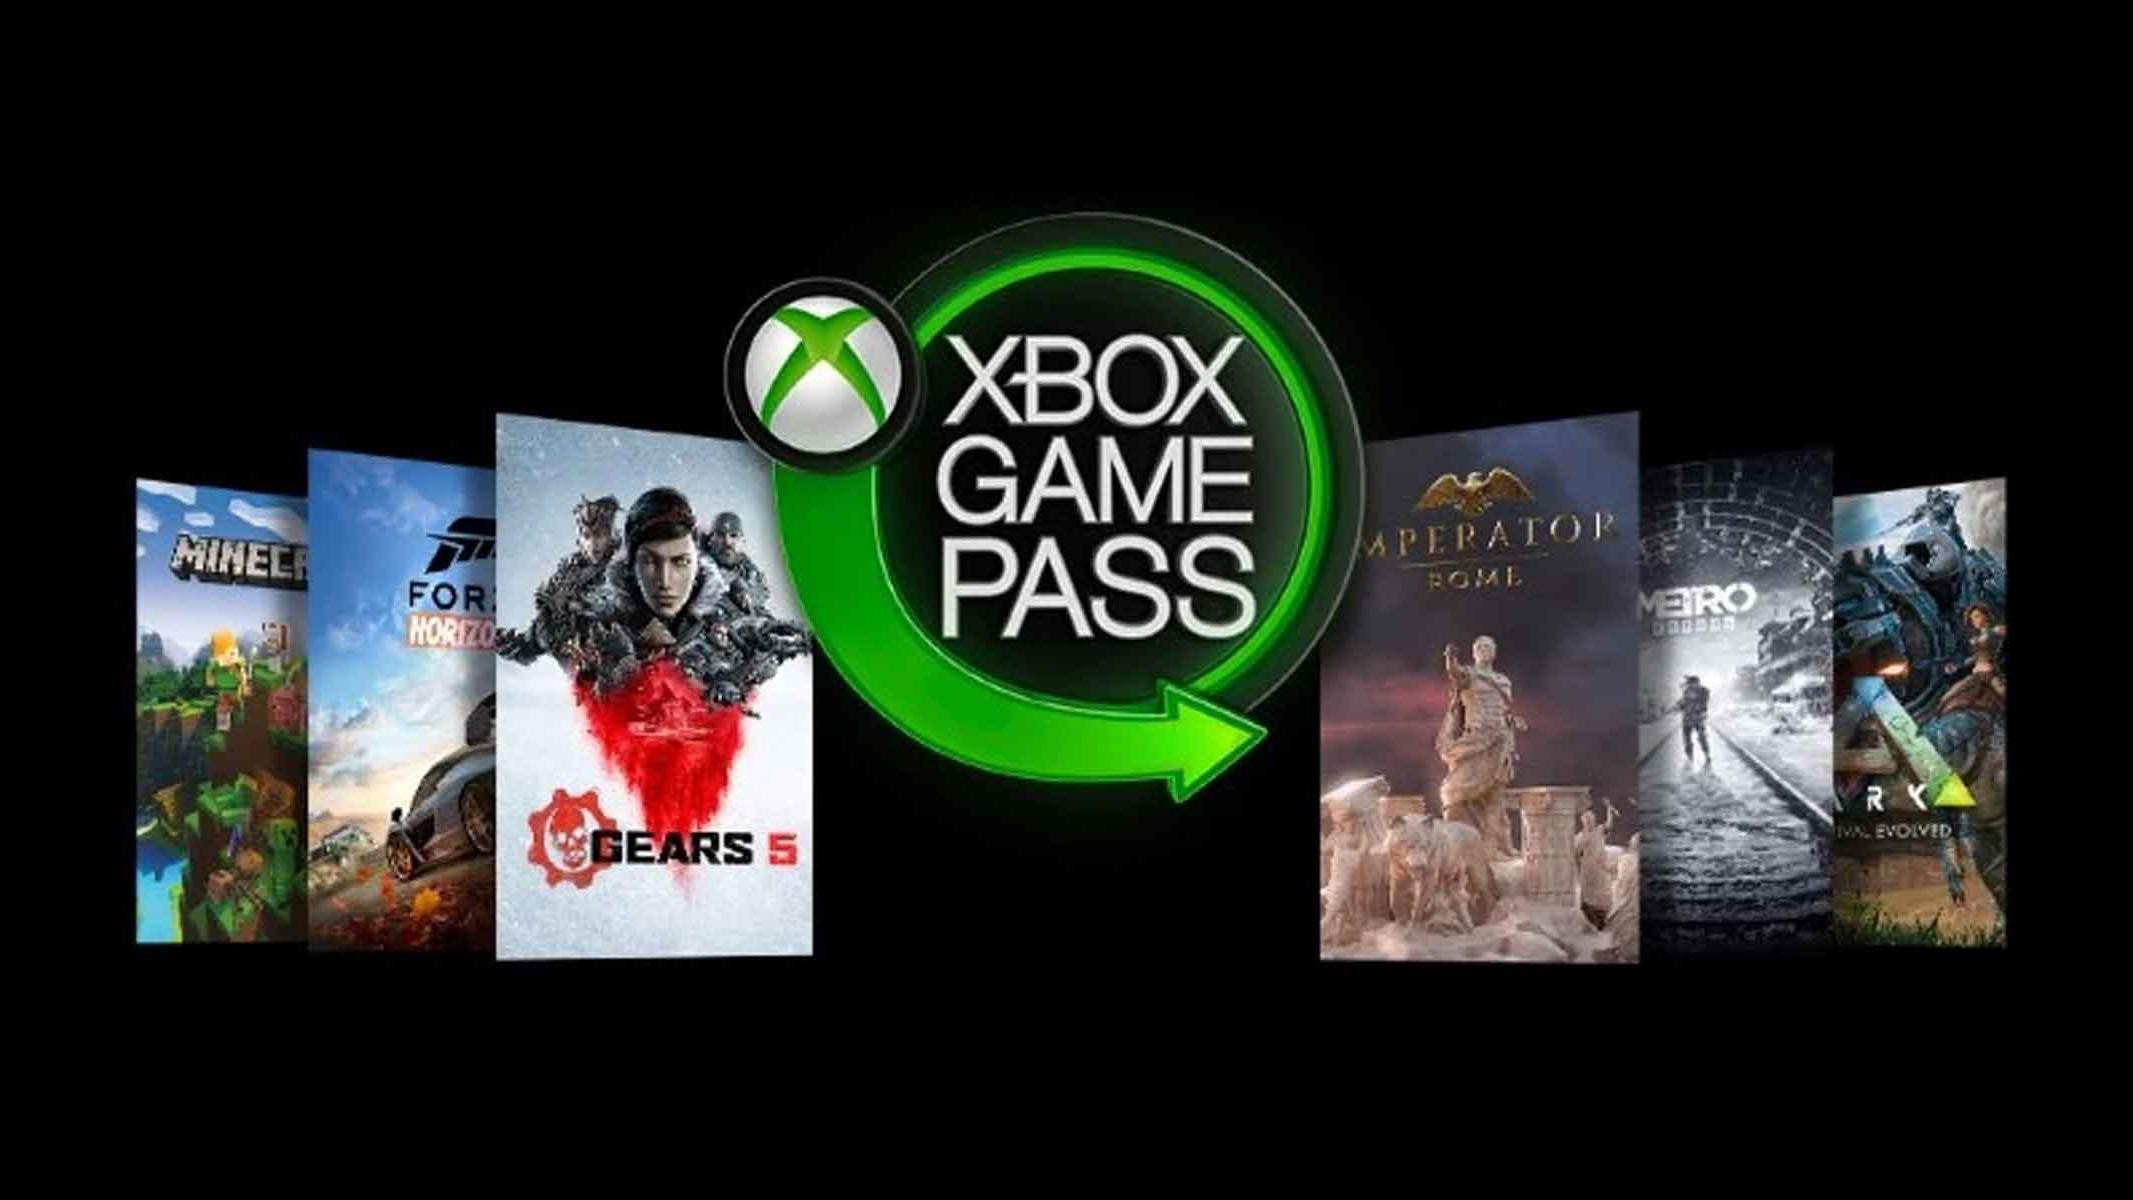 Como Cancelar Assinatura Game Pass, quer Cancelar a Assinatura do Xbox, Xbox Game Pass